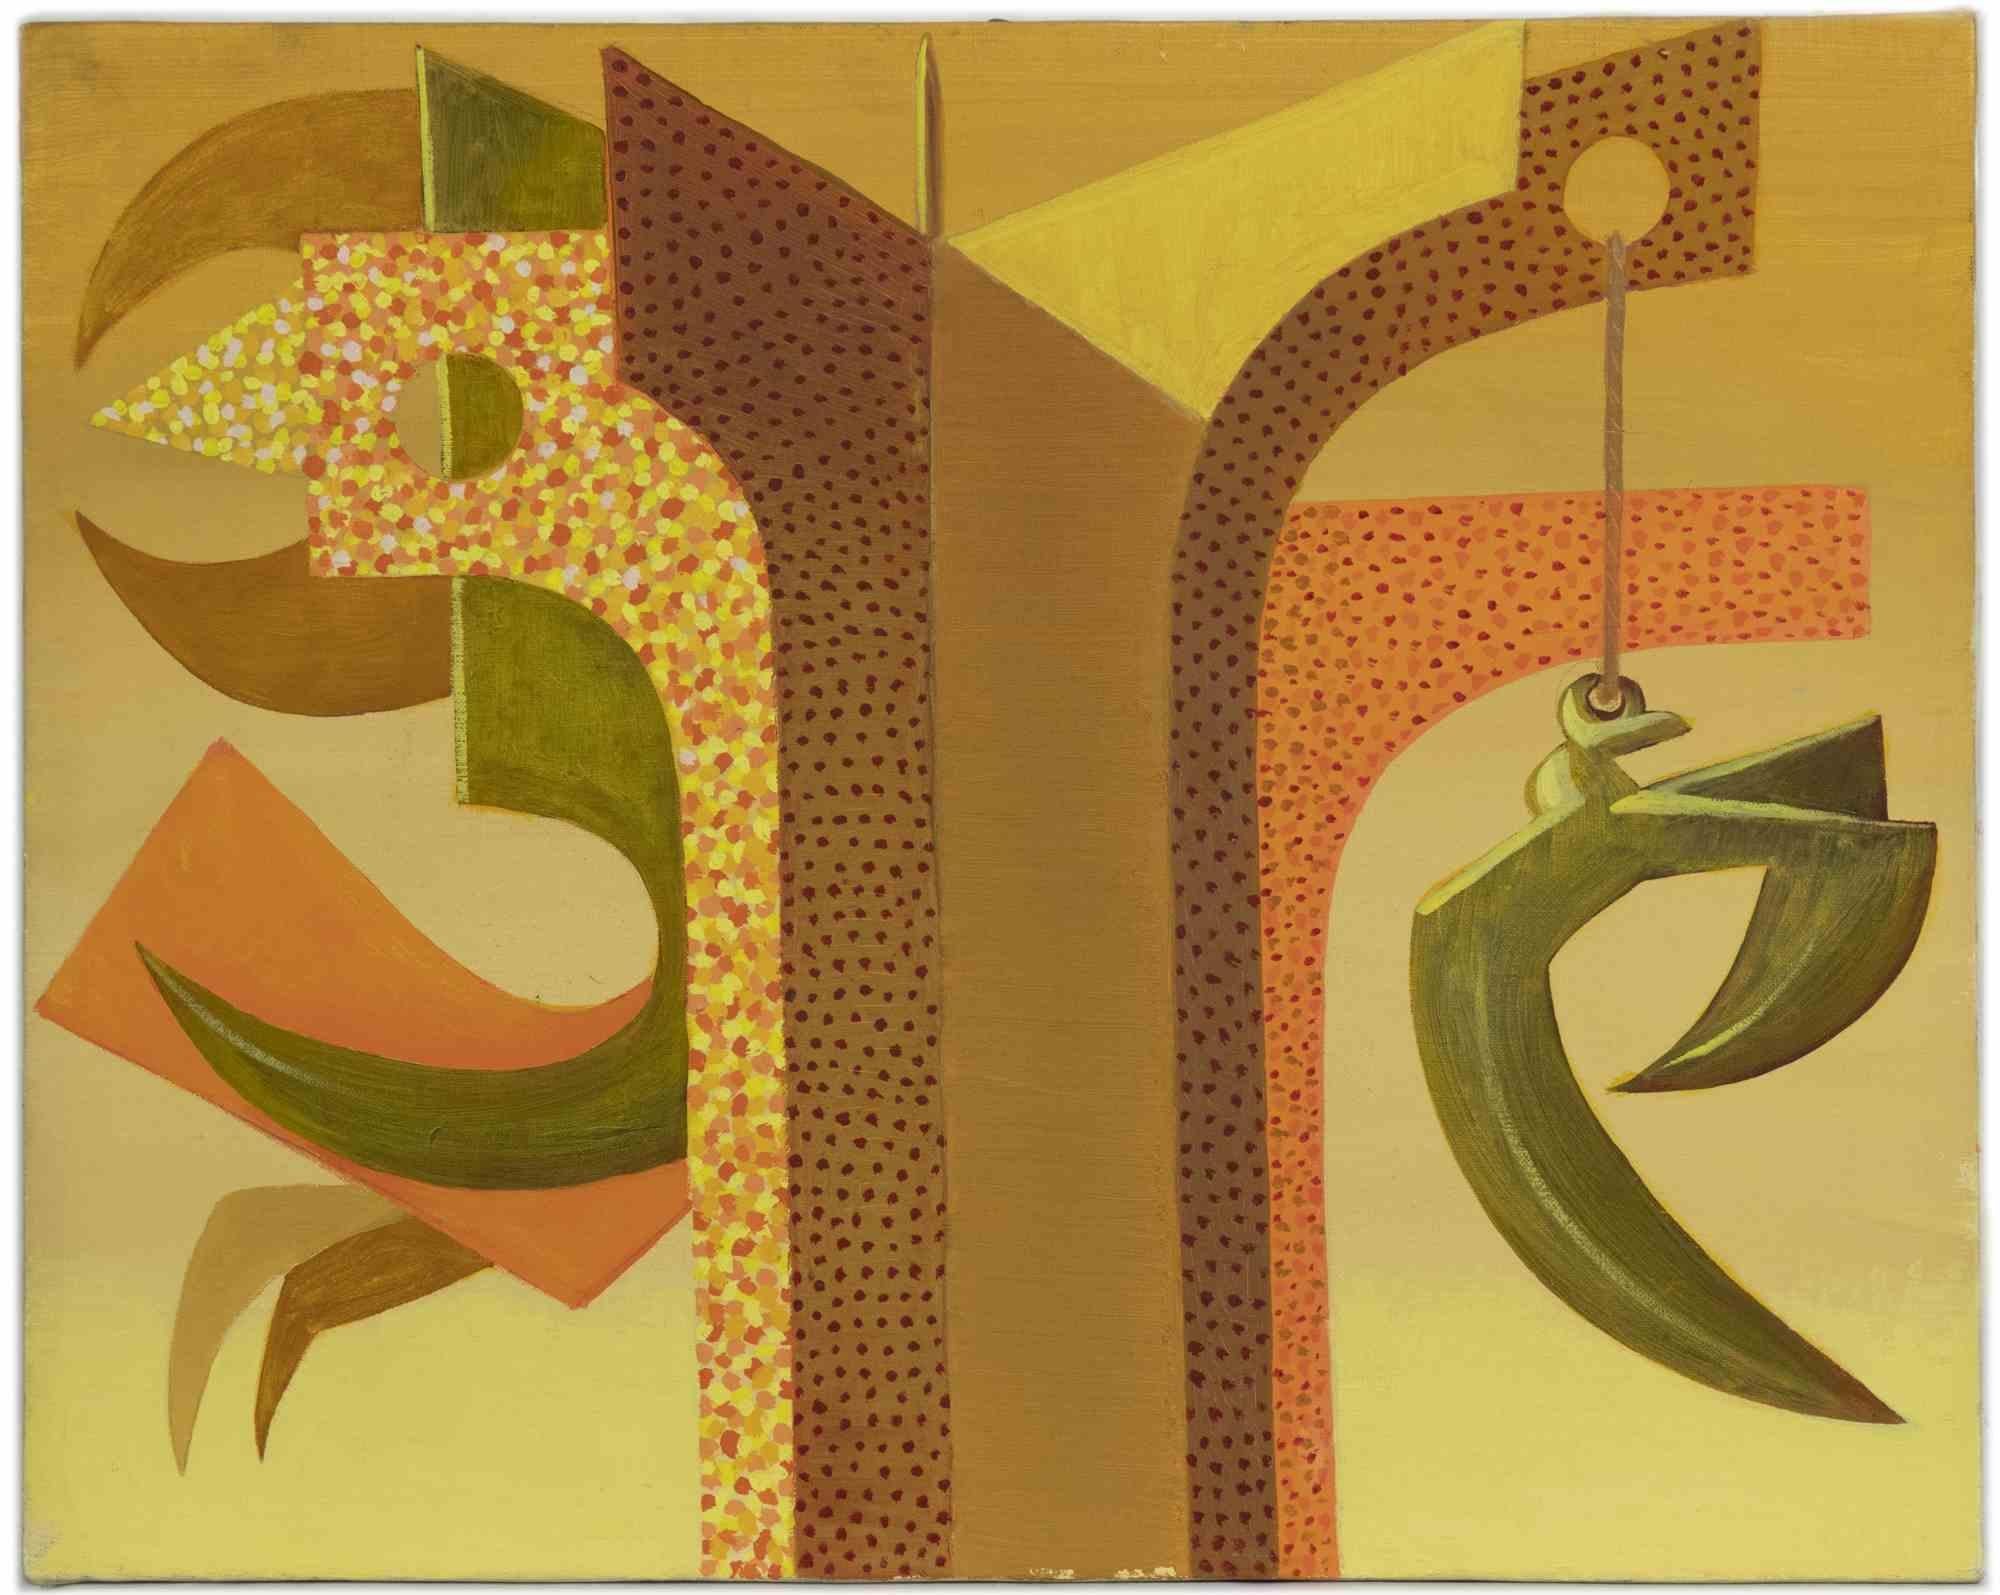 Composition abstraite est une œuvre d'art contemporain réalisée par Leo Guida dans les années 1970.

Huile sur toile de couleurs mélangées

Leo Guida  (1992 - 2017). Sensible aux questions d'actualité, aux mouvements artistiques et aux techniques